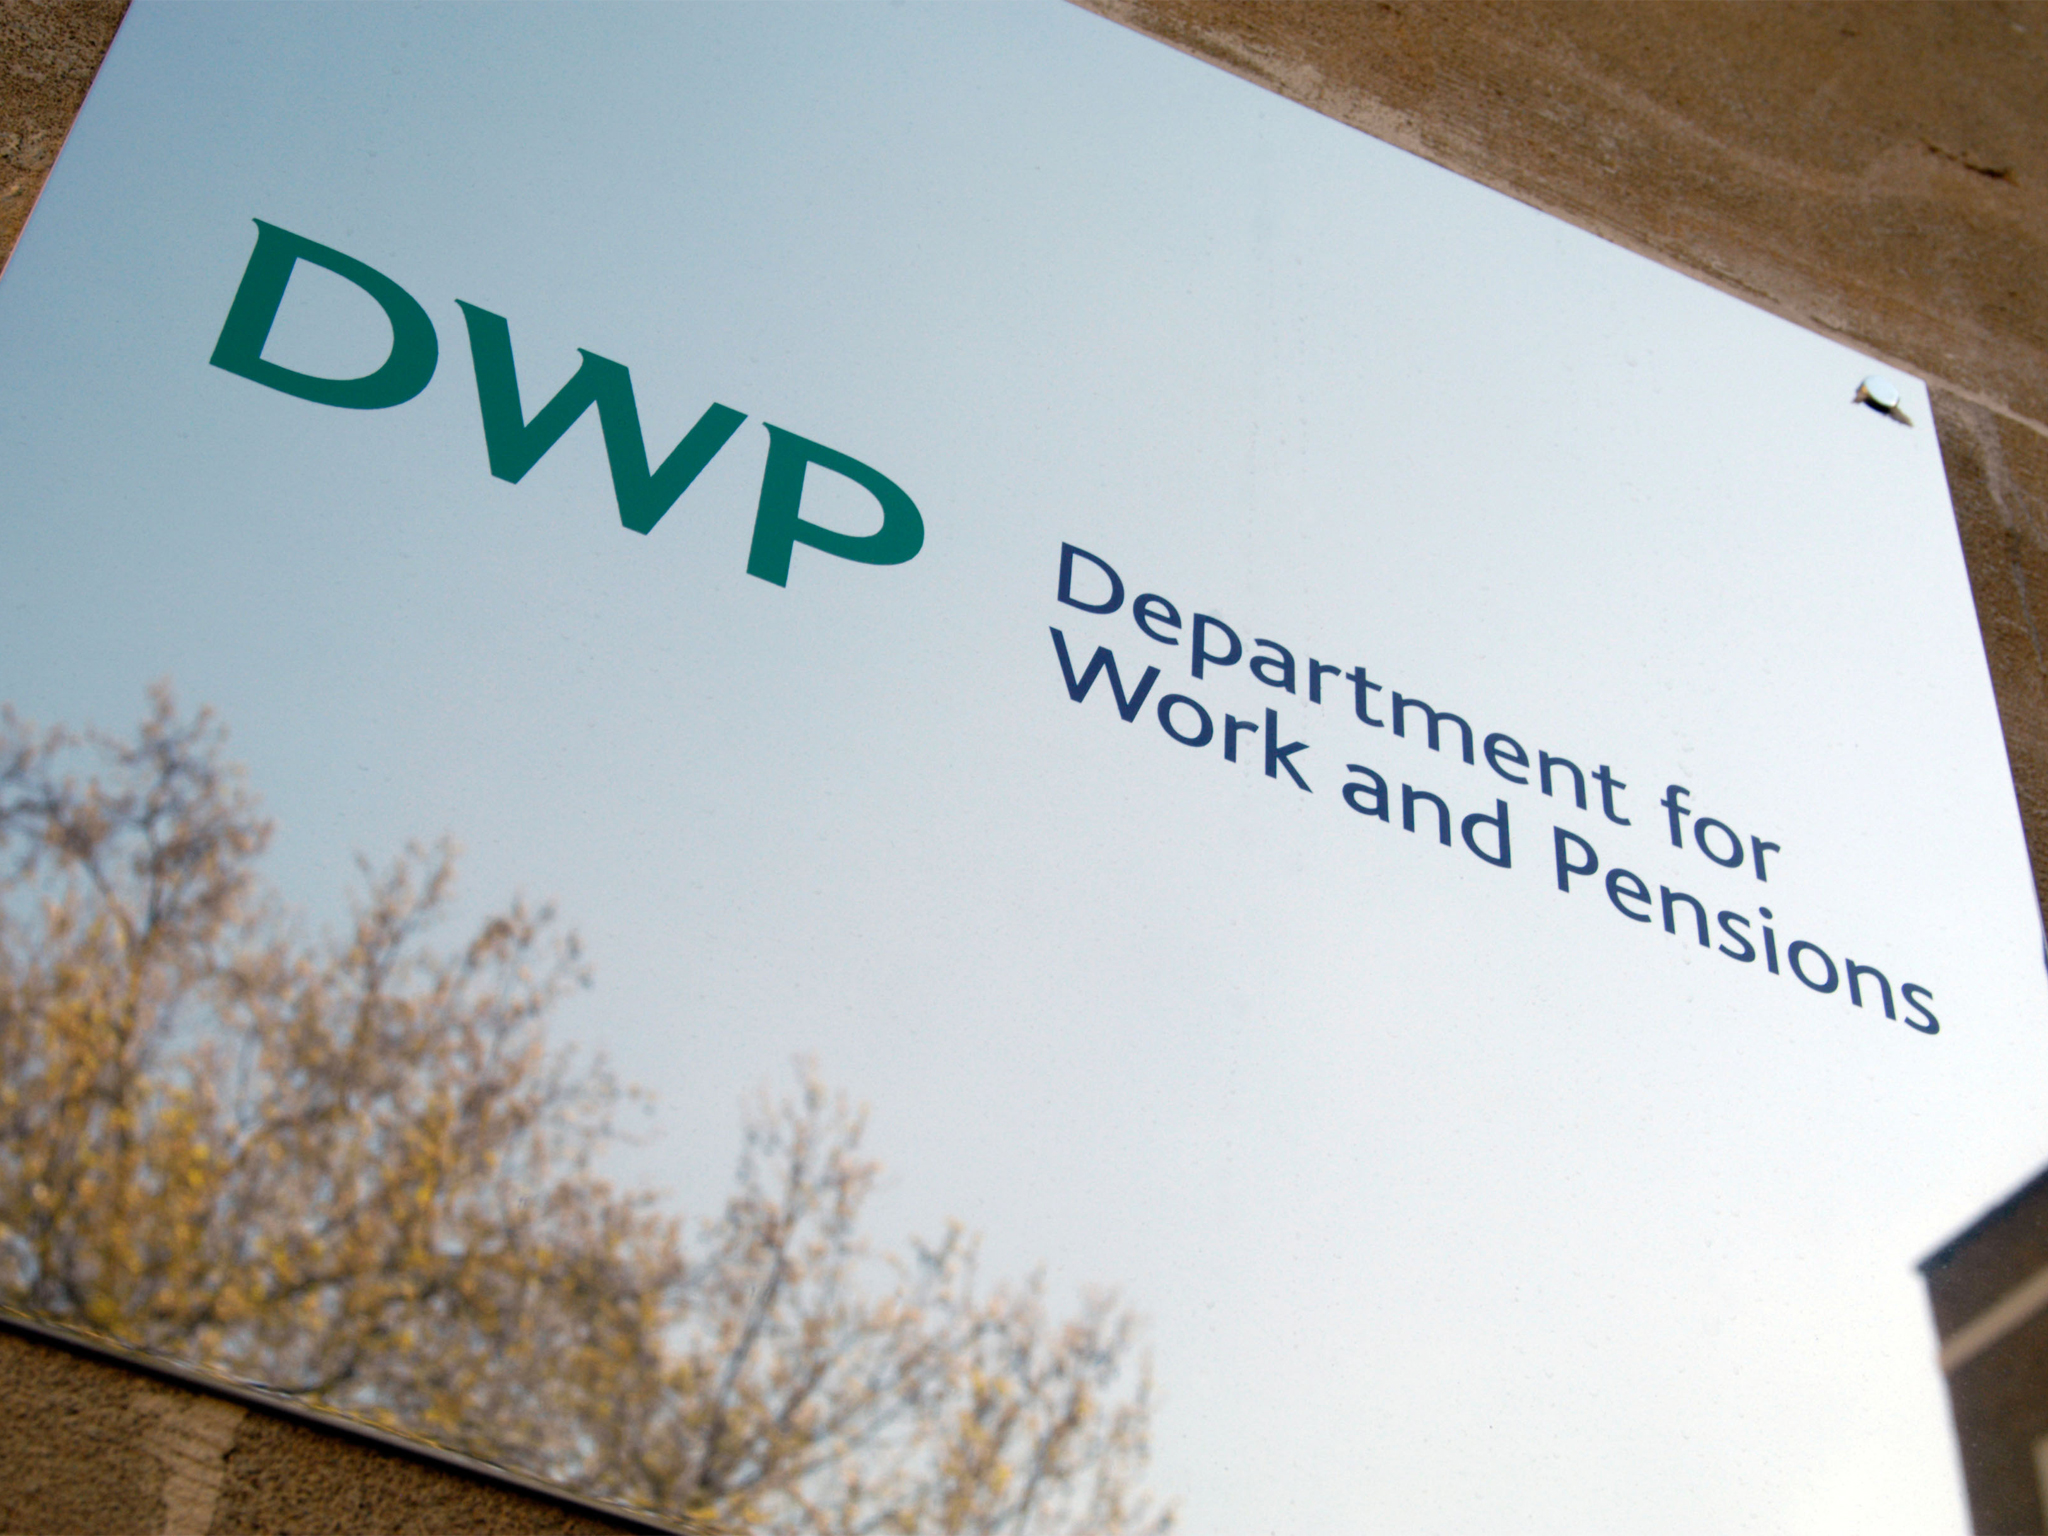 Benefits cap has hit 150,000 renters, DWP figures reveal - https://roomslocal.co.uk/blog/benefits-cap-has-hit-150000-renters-dwp-figures-reveal #renters #figures #reveal